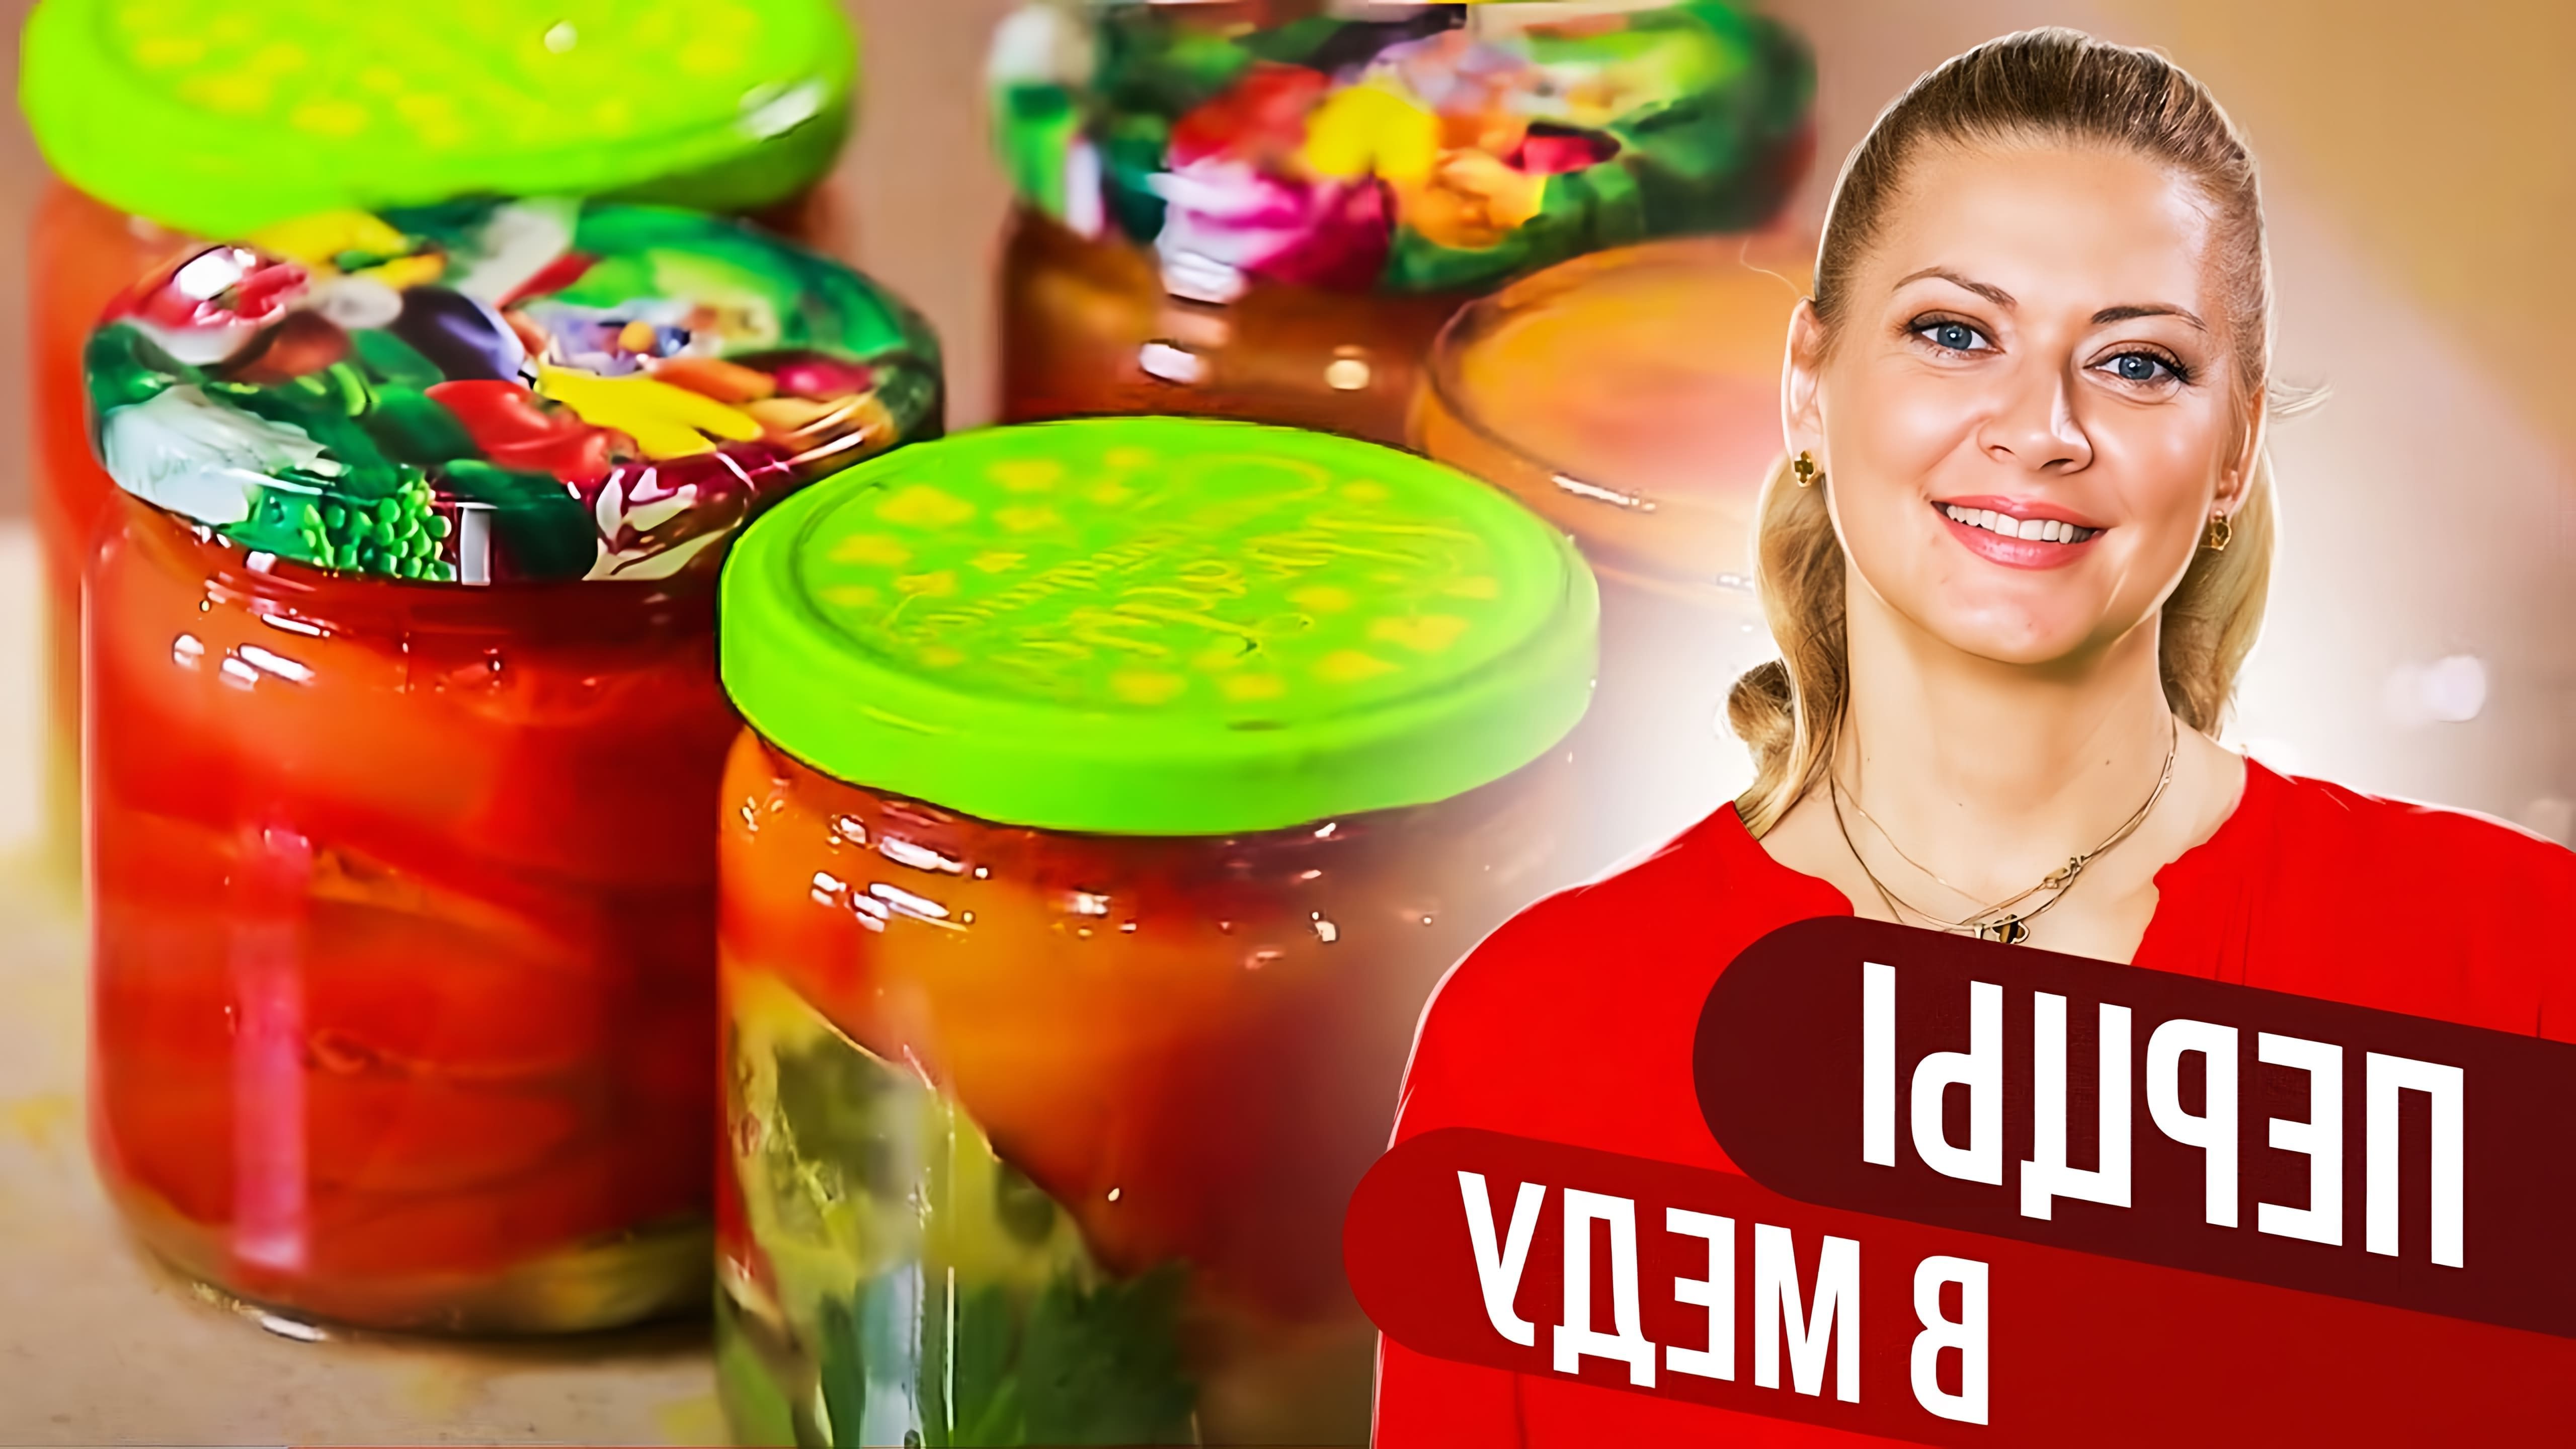 В этом видео Татьяна Литвинова показывает, как приготовить перцы в меду - удобный и вкусный рецепт